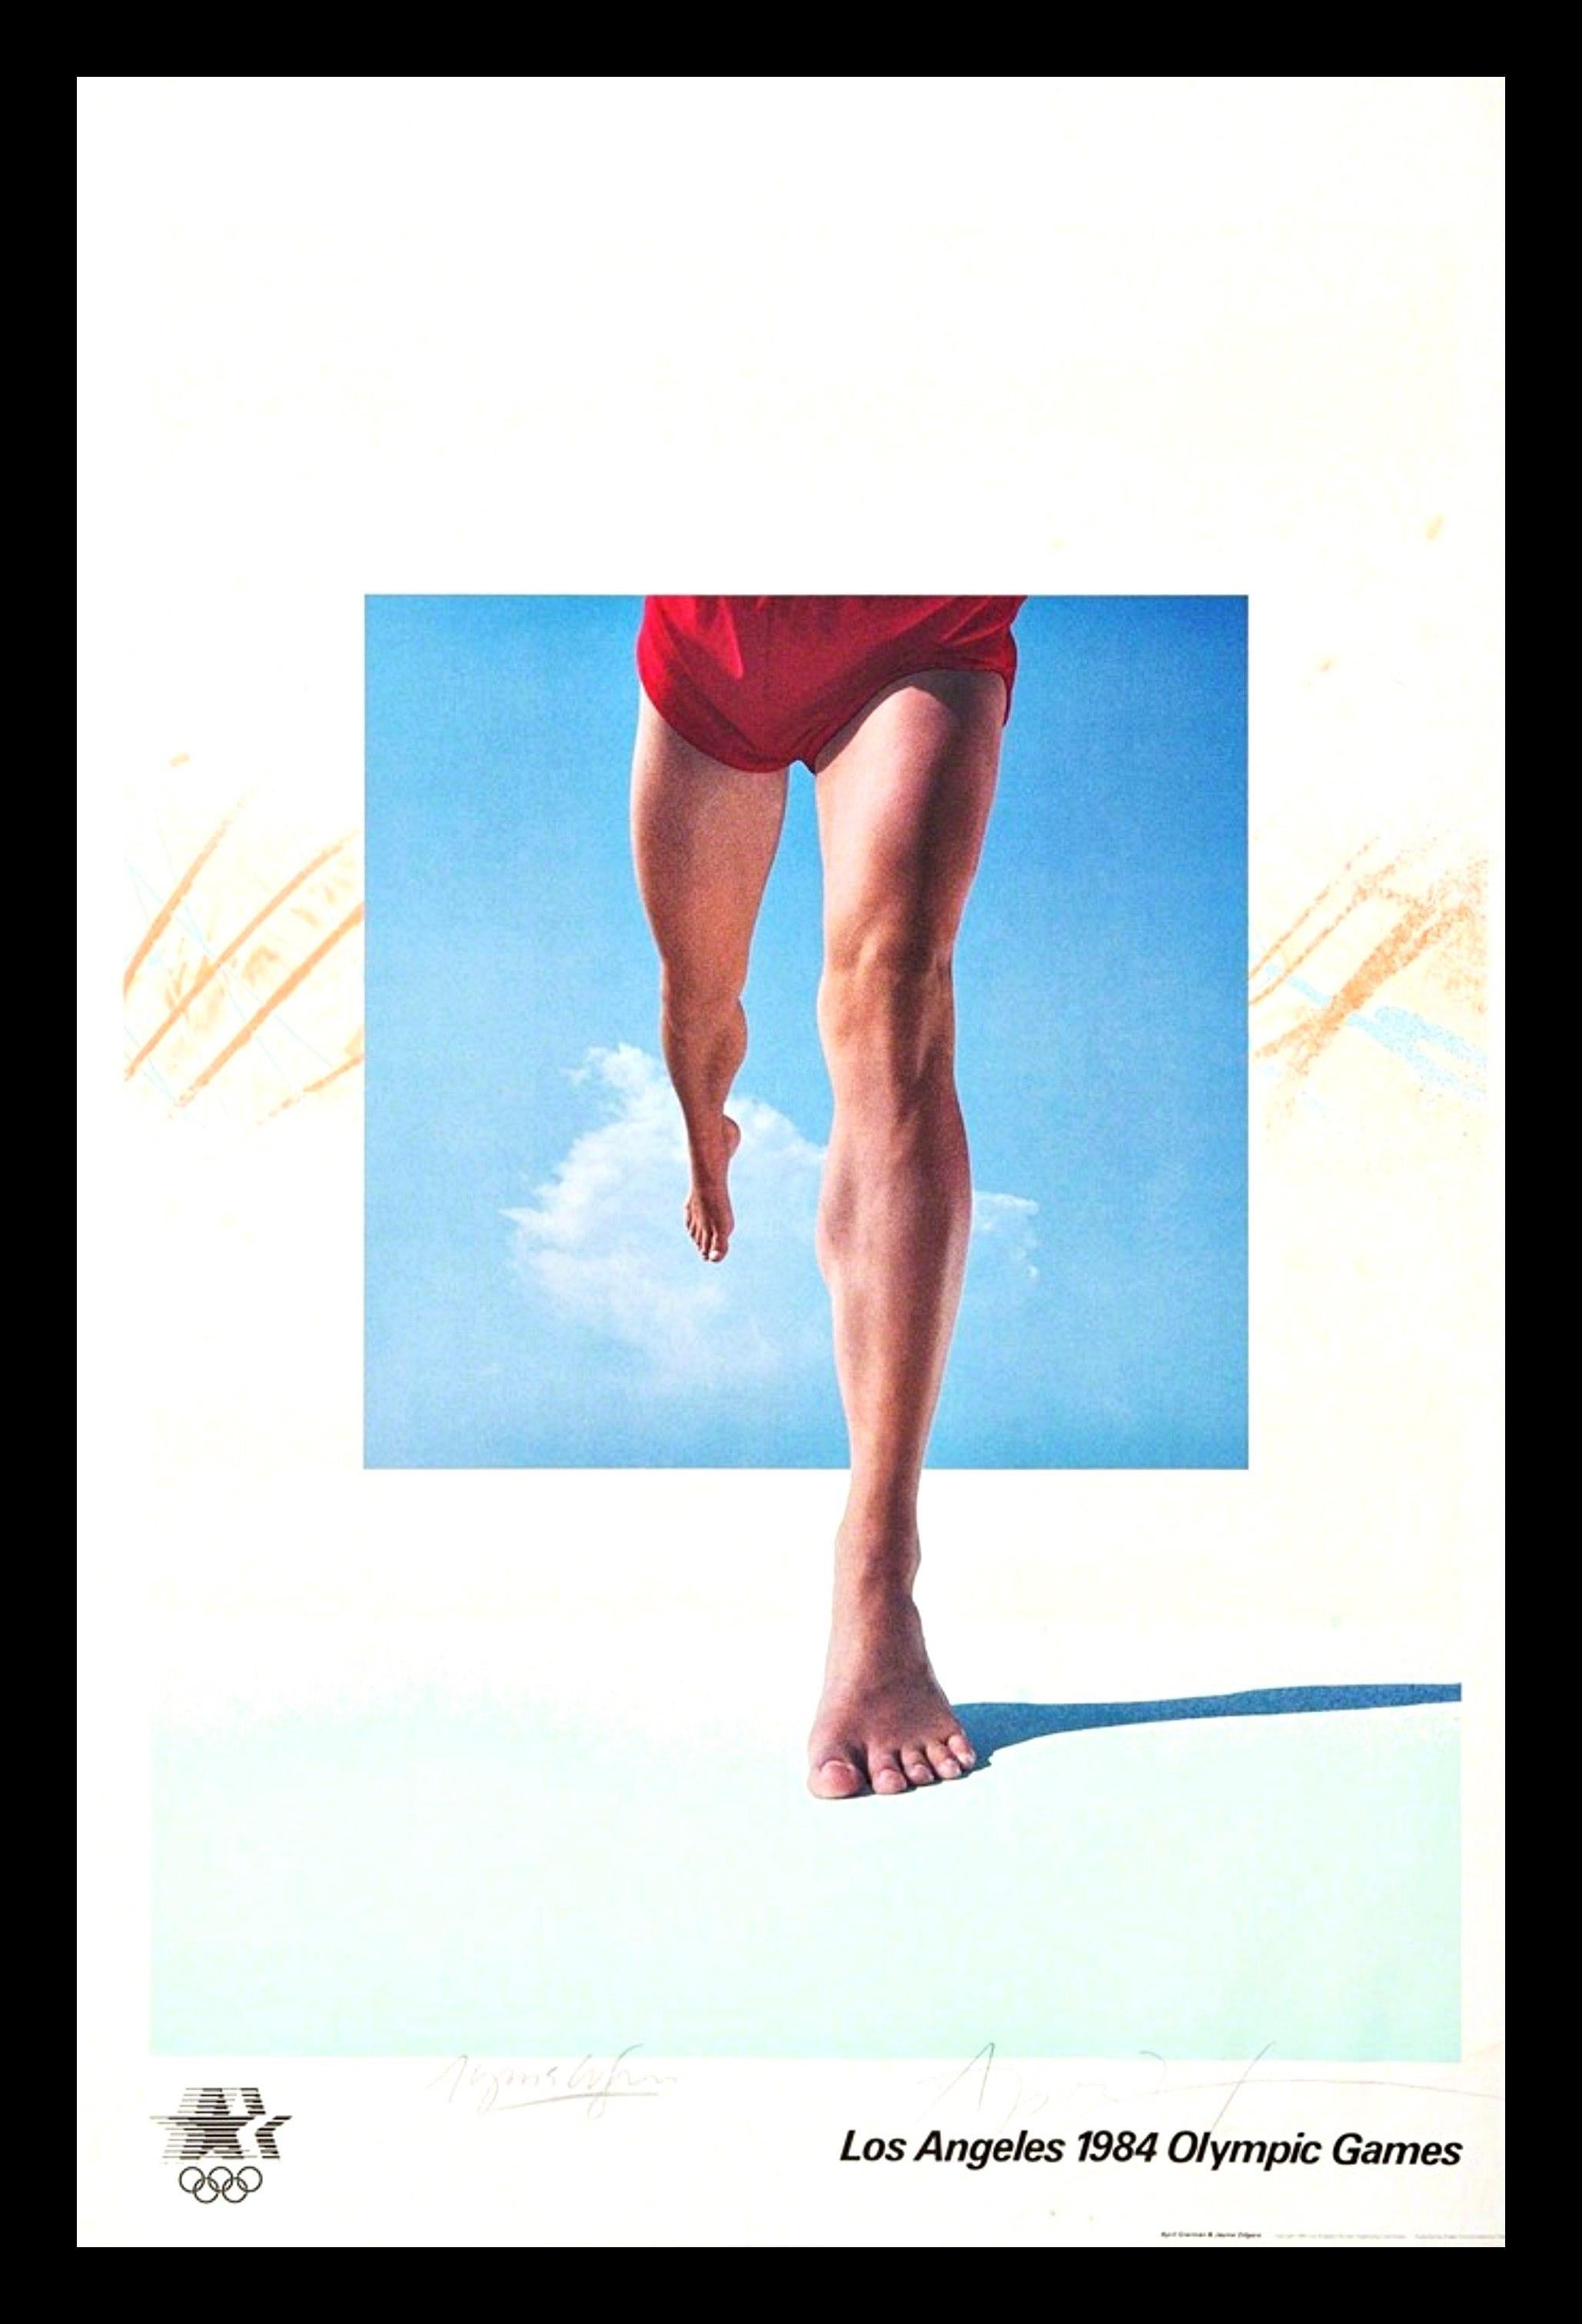 April Greiman
Olympische Spiele 1984 Druck (handsigniert von April Greiman und Jayme Odgers), 1982
Offset-Lithographie-Poster
Auf der Vorderseite mit Graphitstift signiert. Begleitet von einem Echtheitszertifikat des Verlags
36 x 24